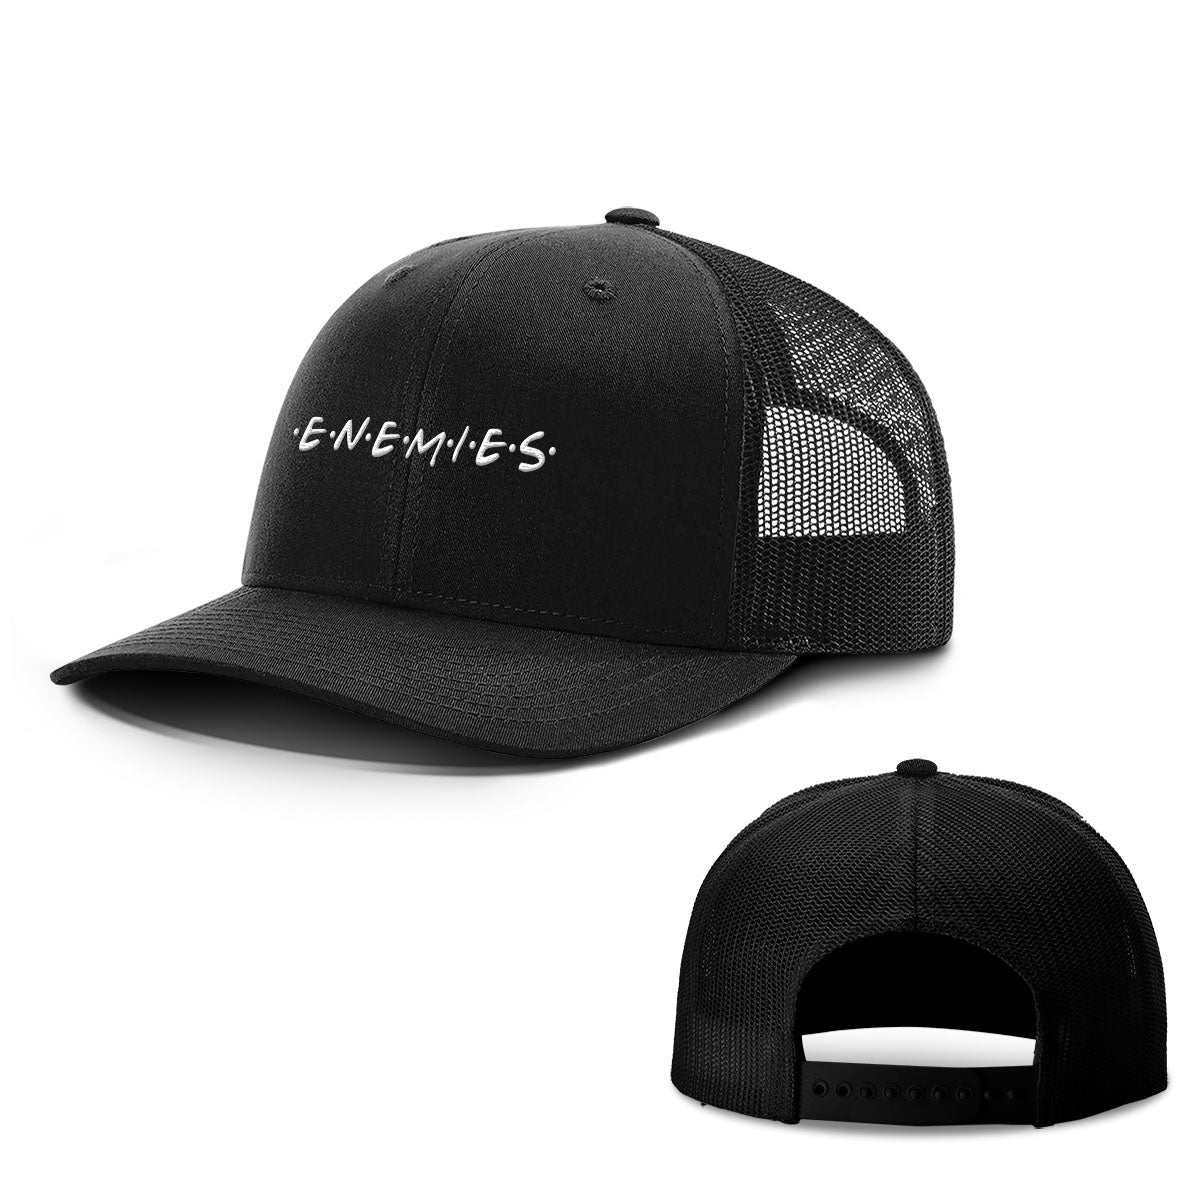 E.N.E.M.I.E.S Hats - BustedTees.com